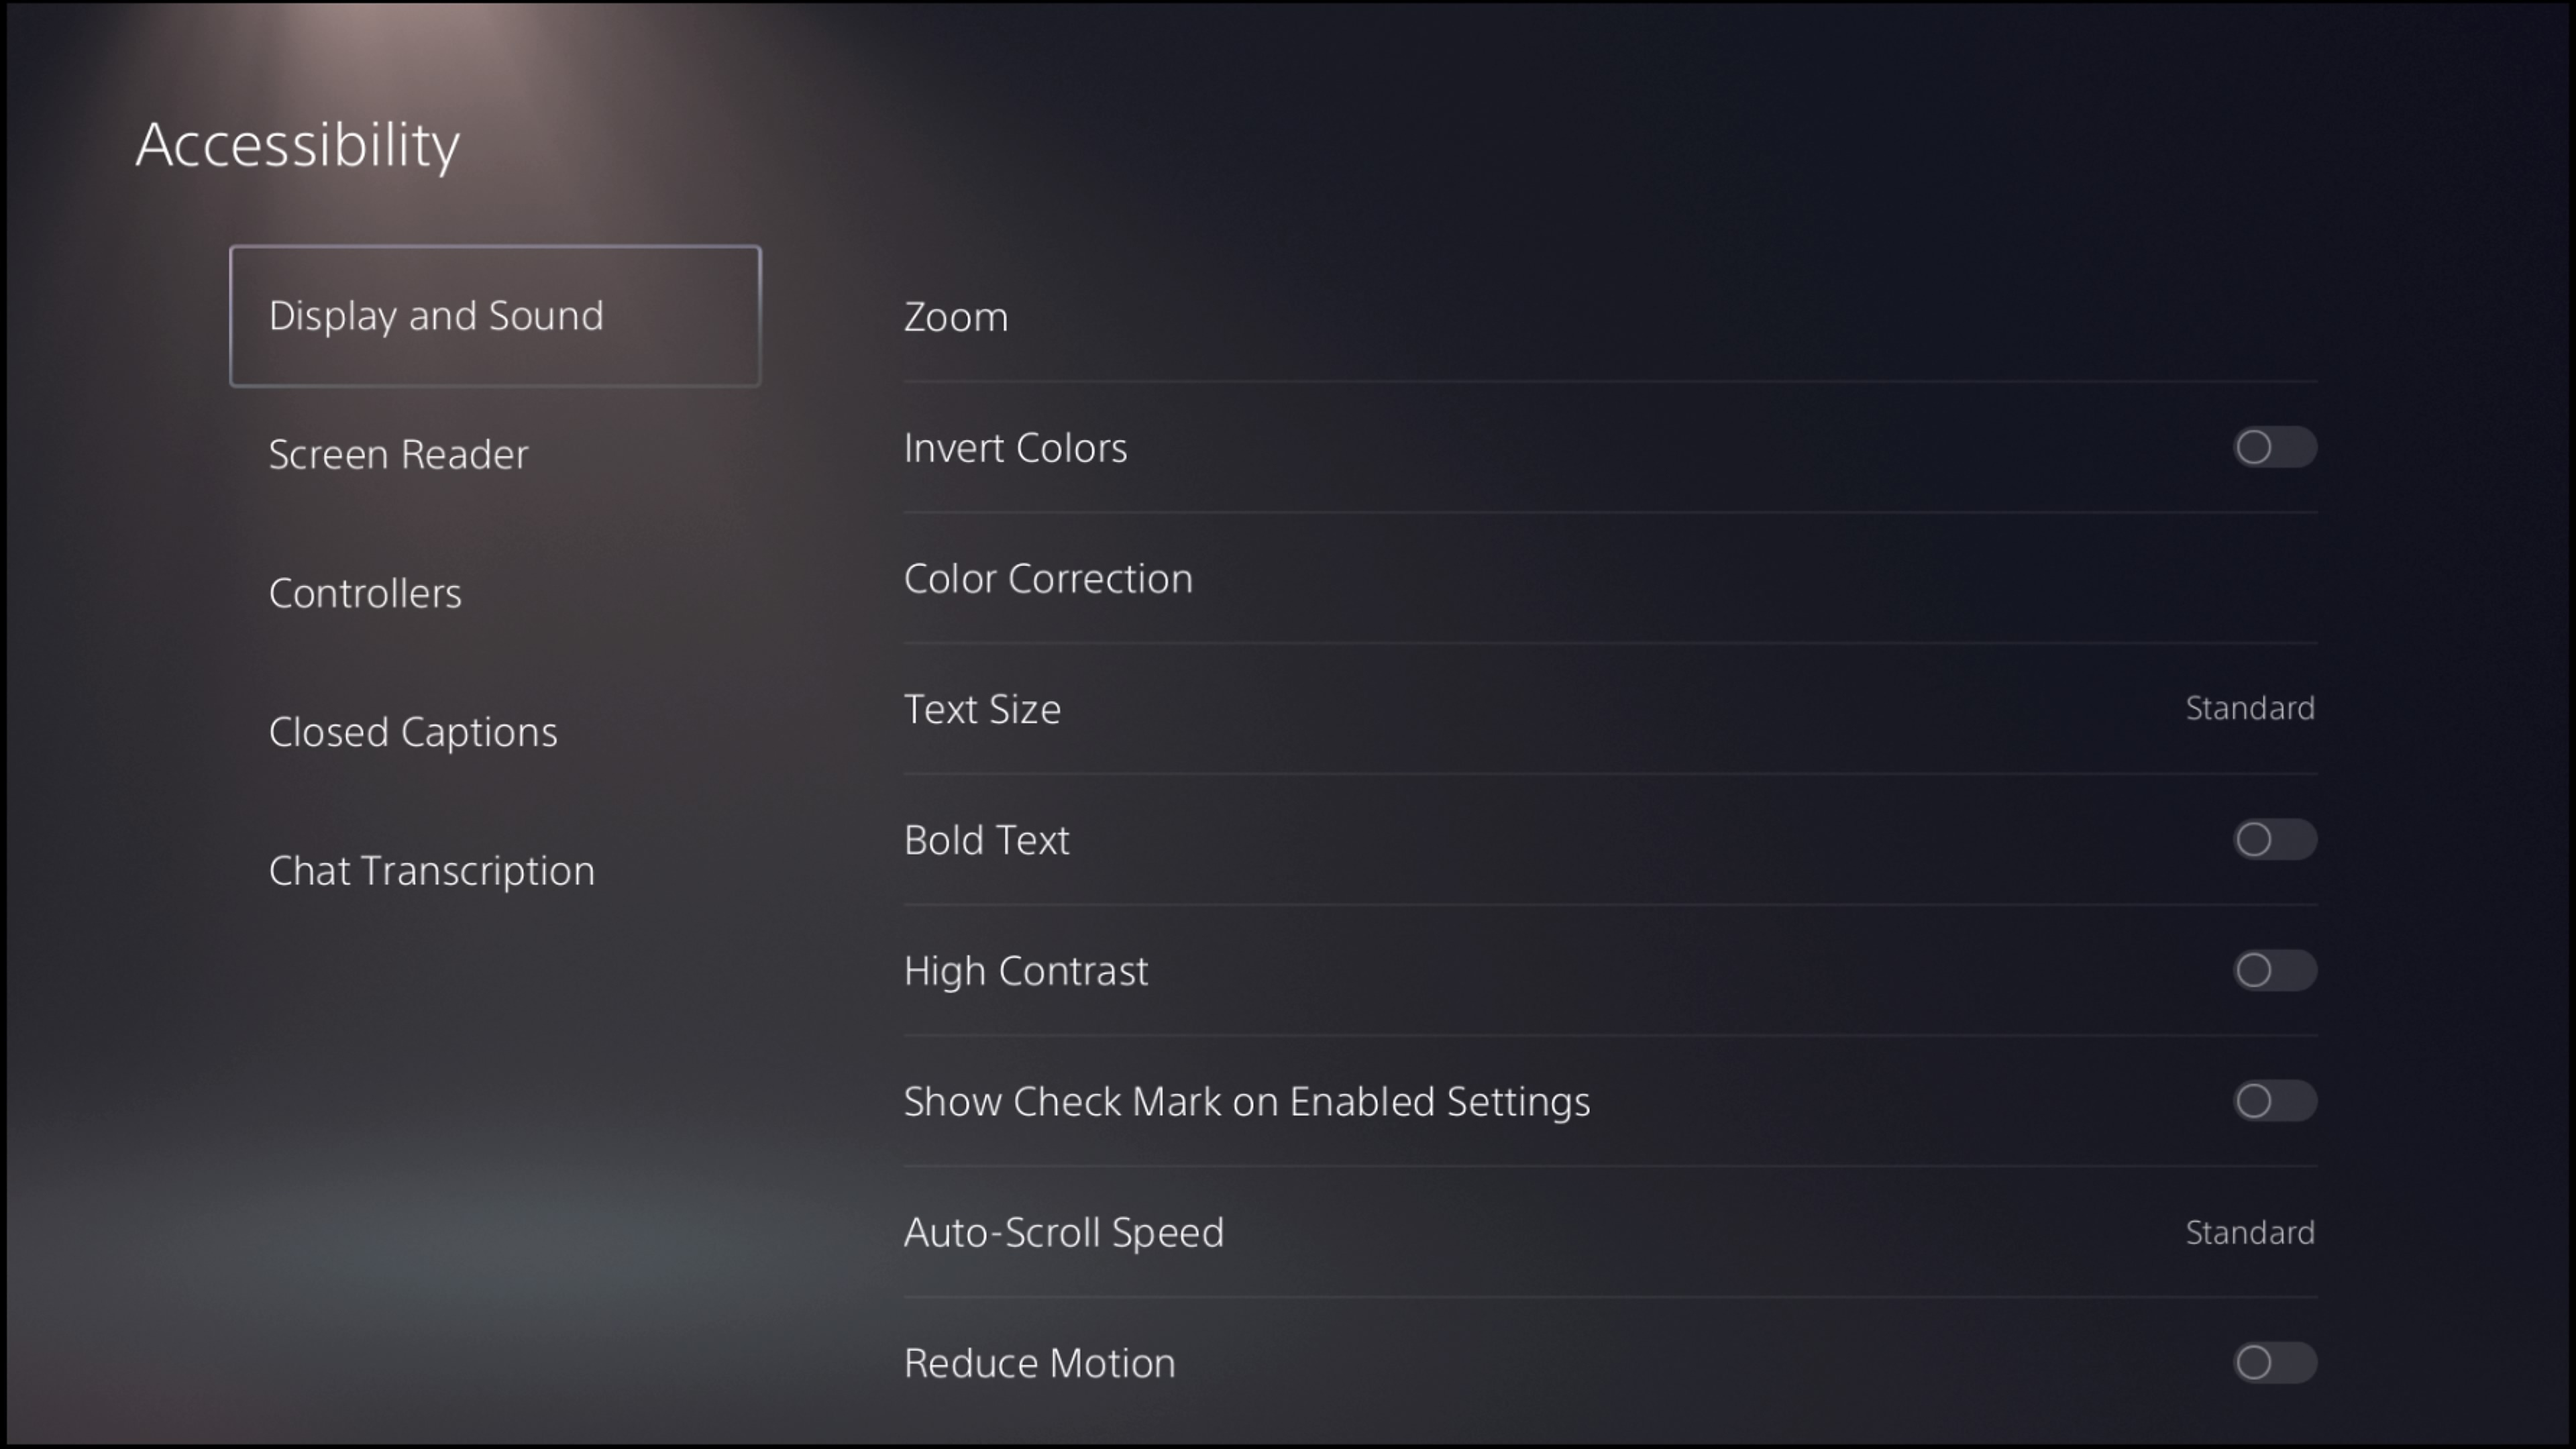 Posnetek zaslona uporabniškega vmesnika PS5 za nastavitev prikaza in zvoka